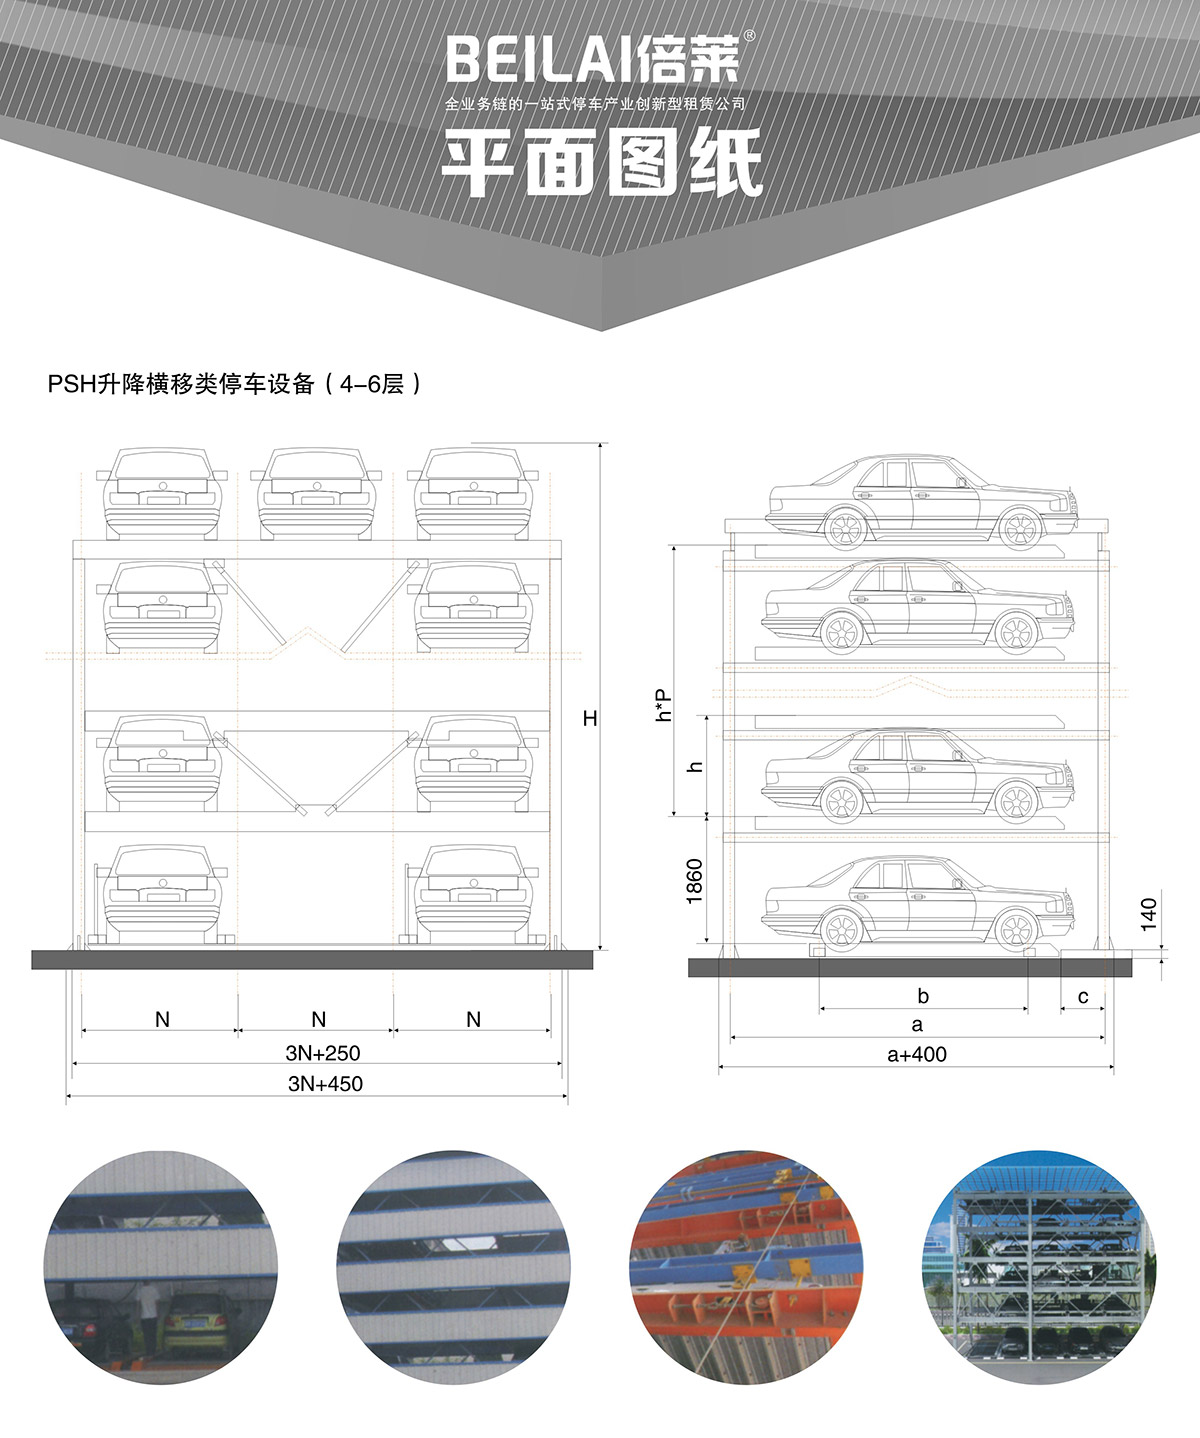 四川四至六层PSH4-6升降横移类机械式立体停车设备平面图纸.jpg